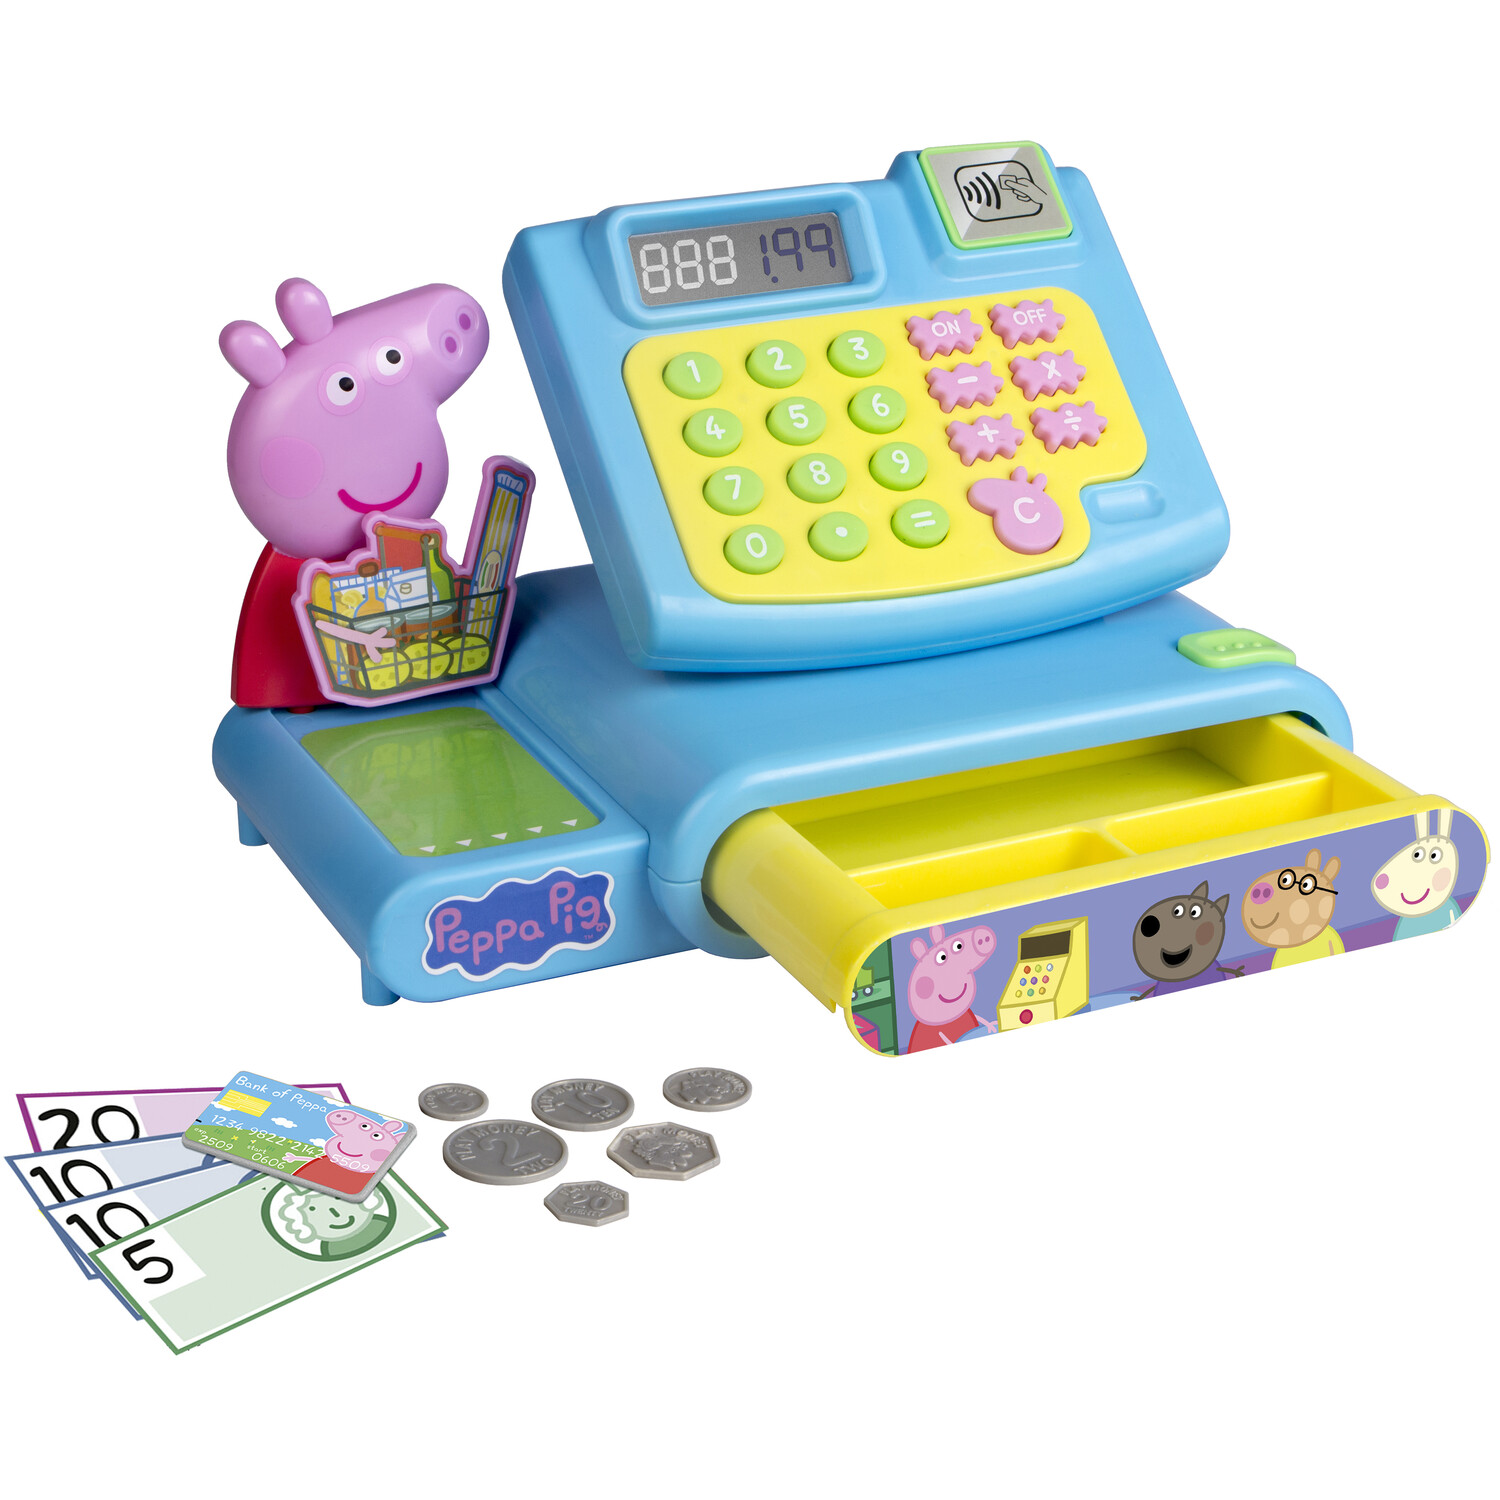 Peppa Pig Cash Register Toy Blue Image